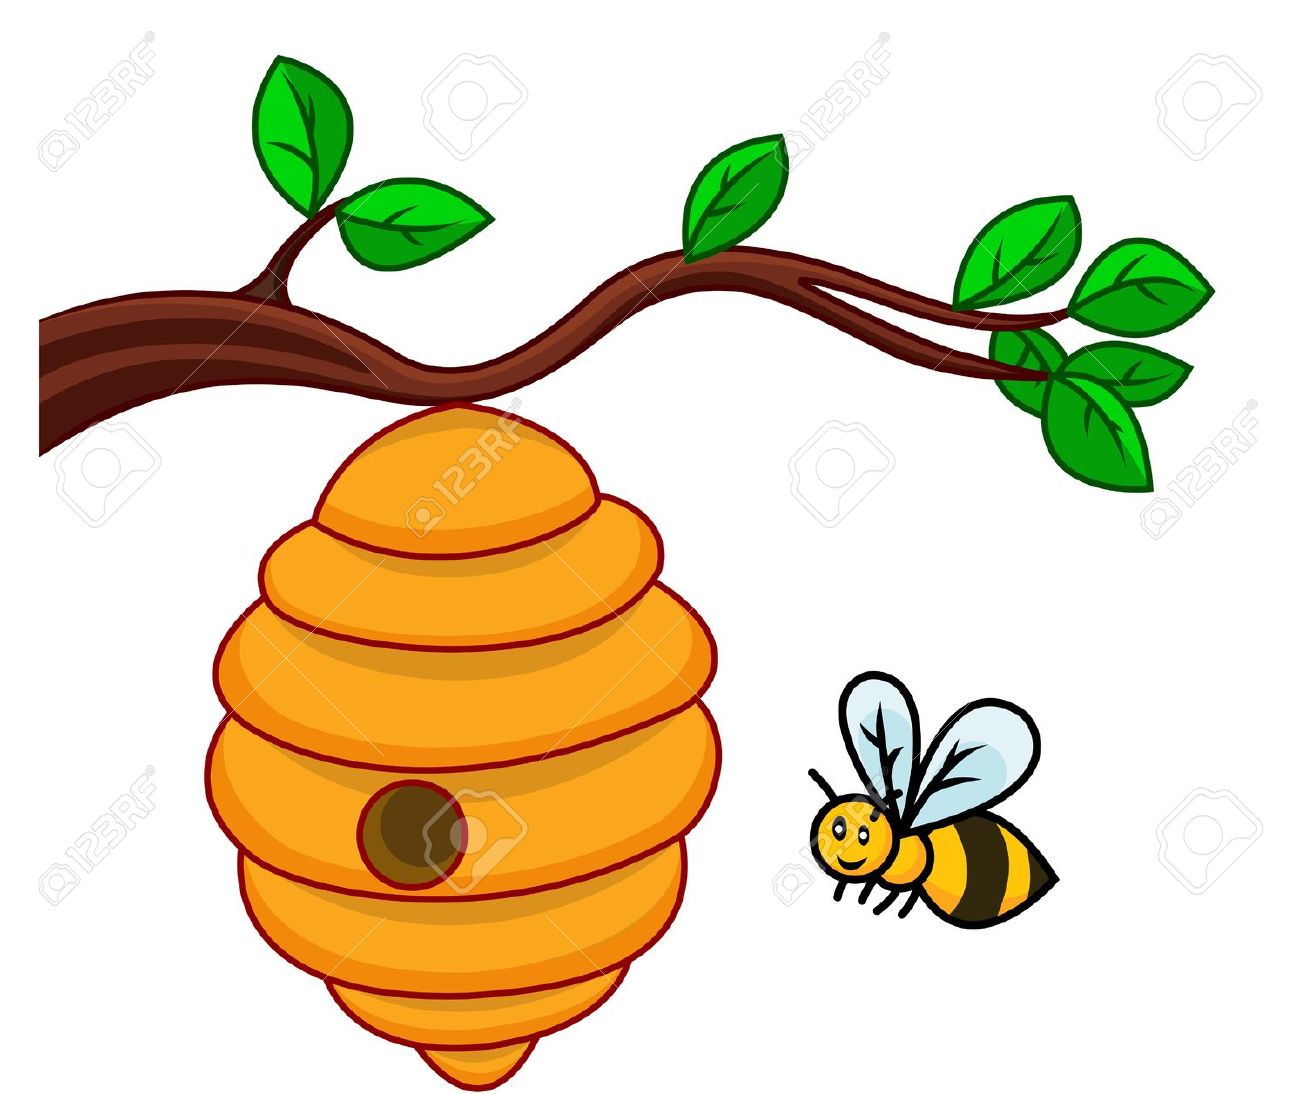 54 bee hive.